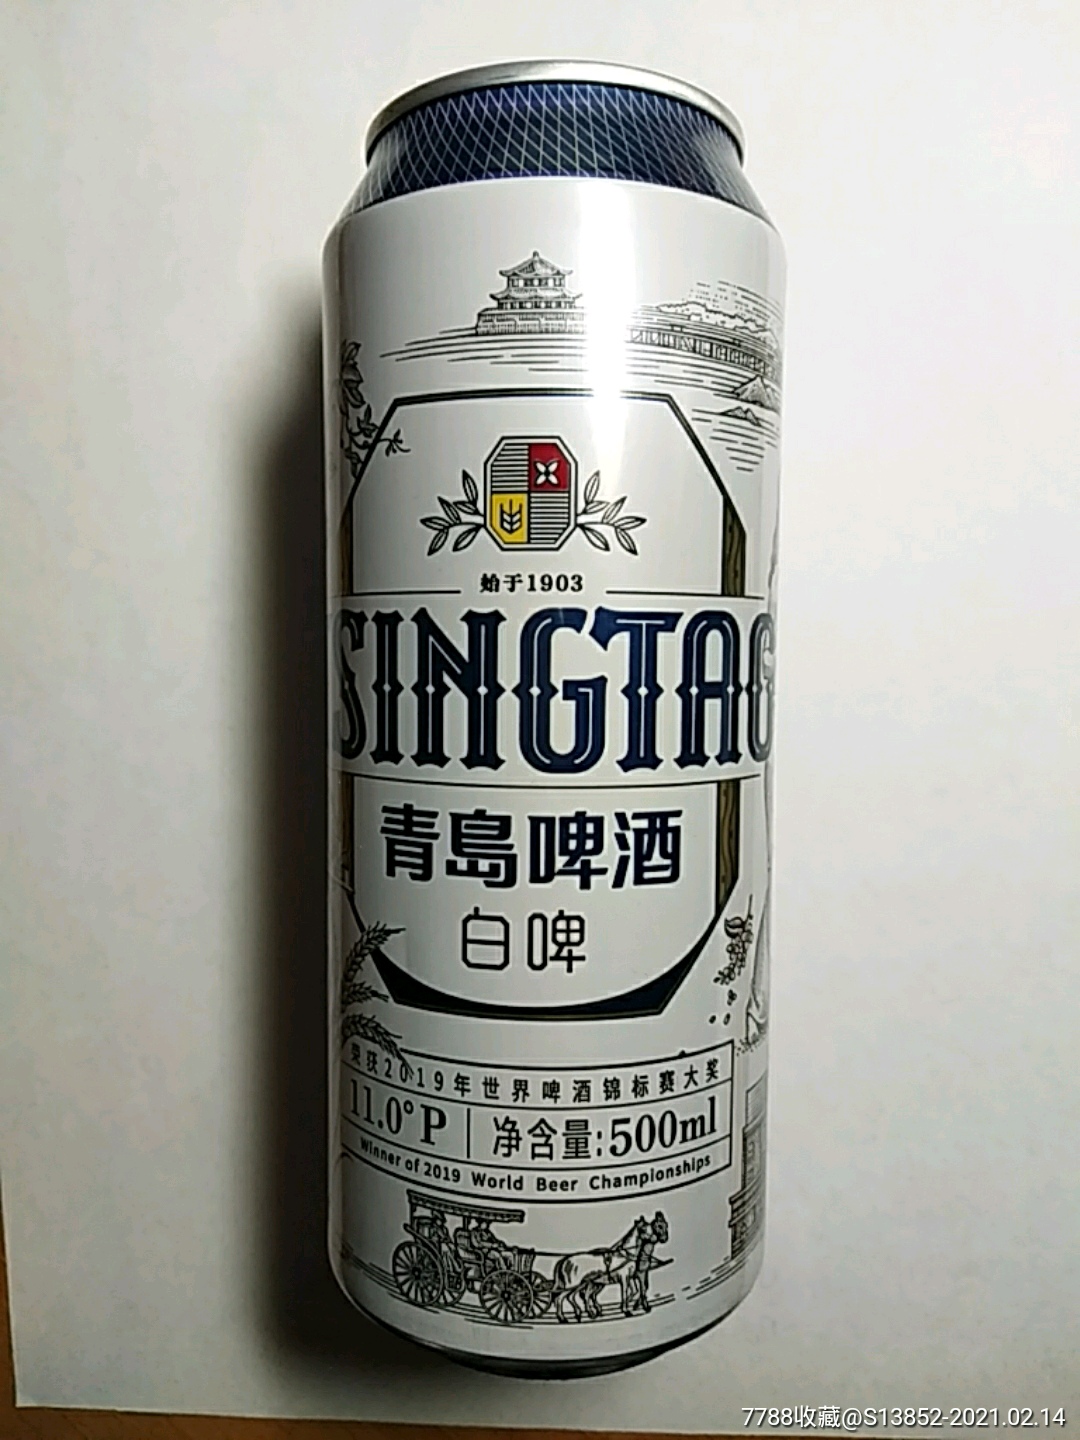 大白梨青岛啤酒瓶子图片